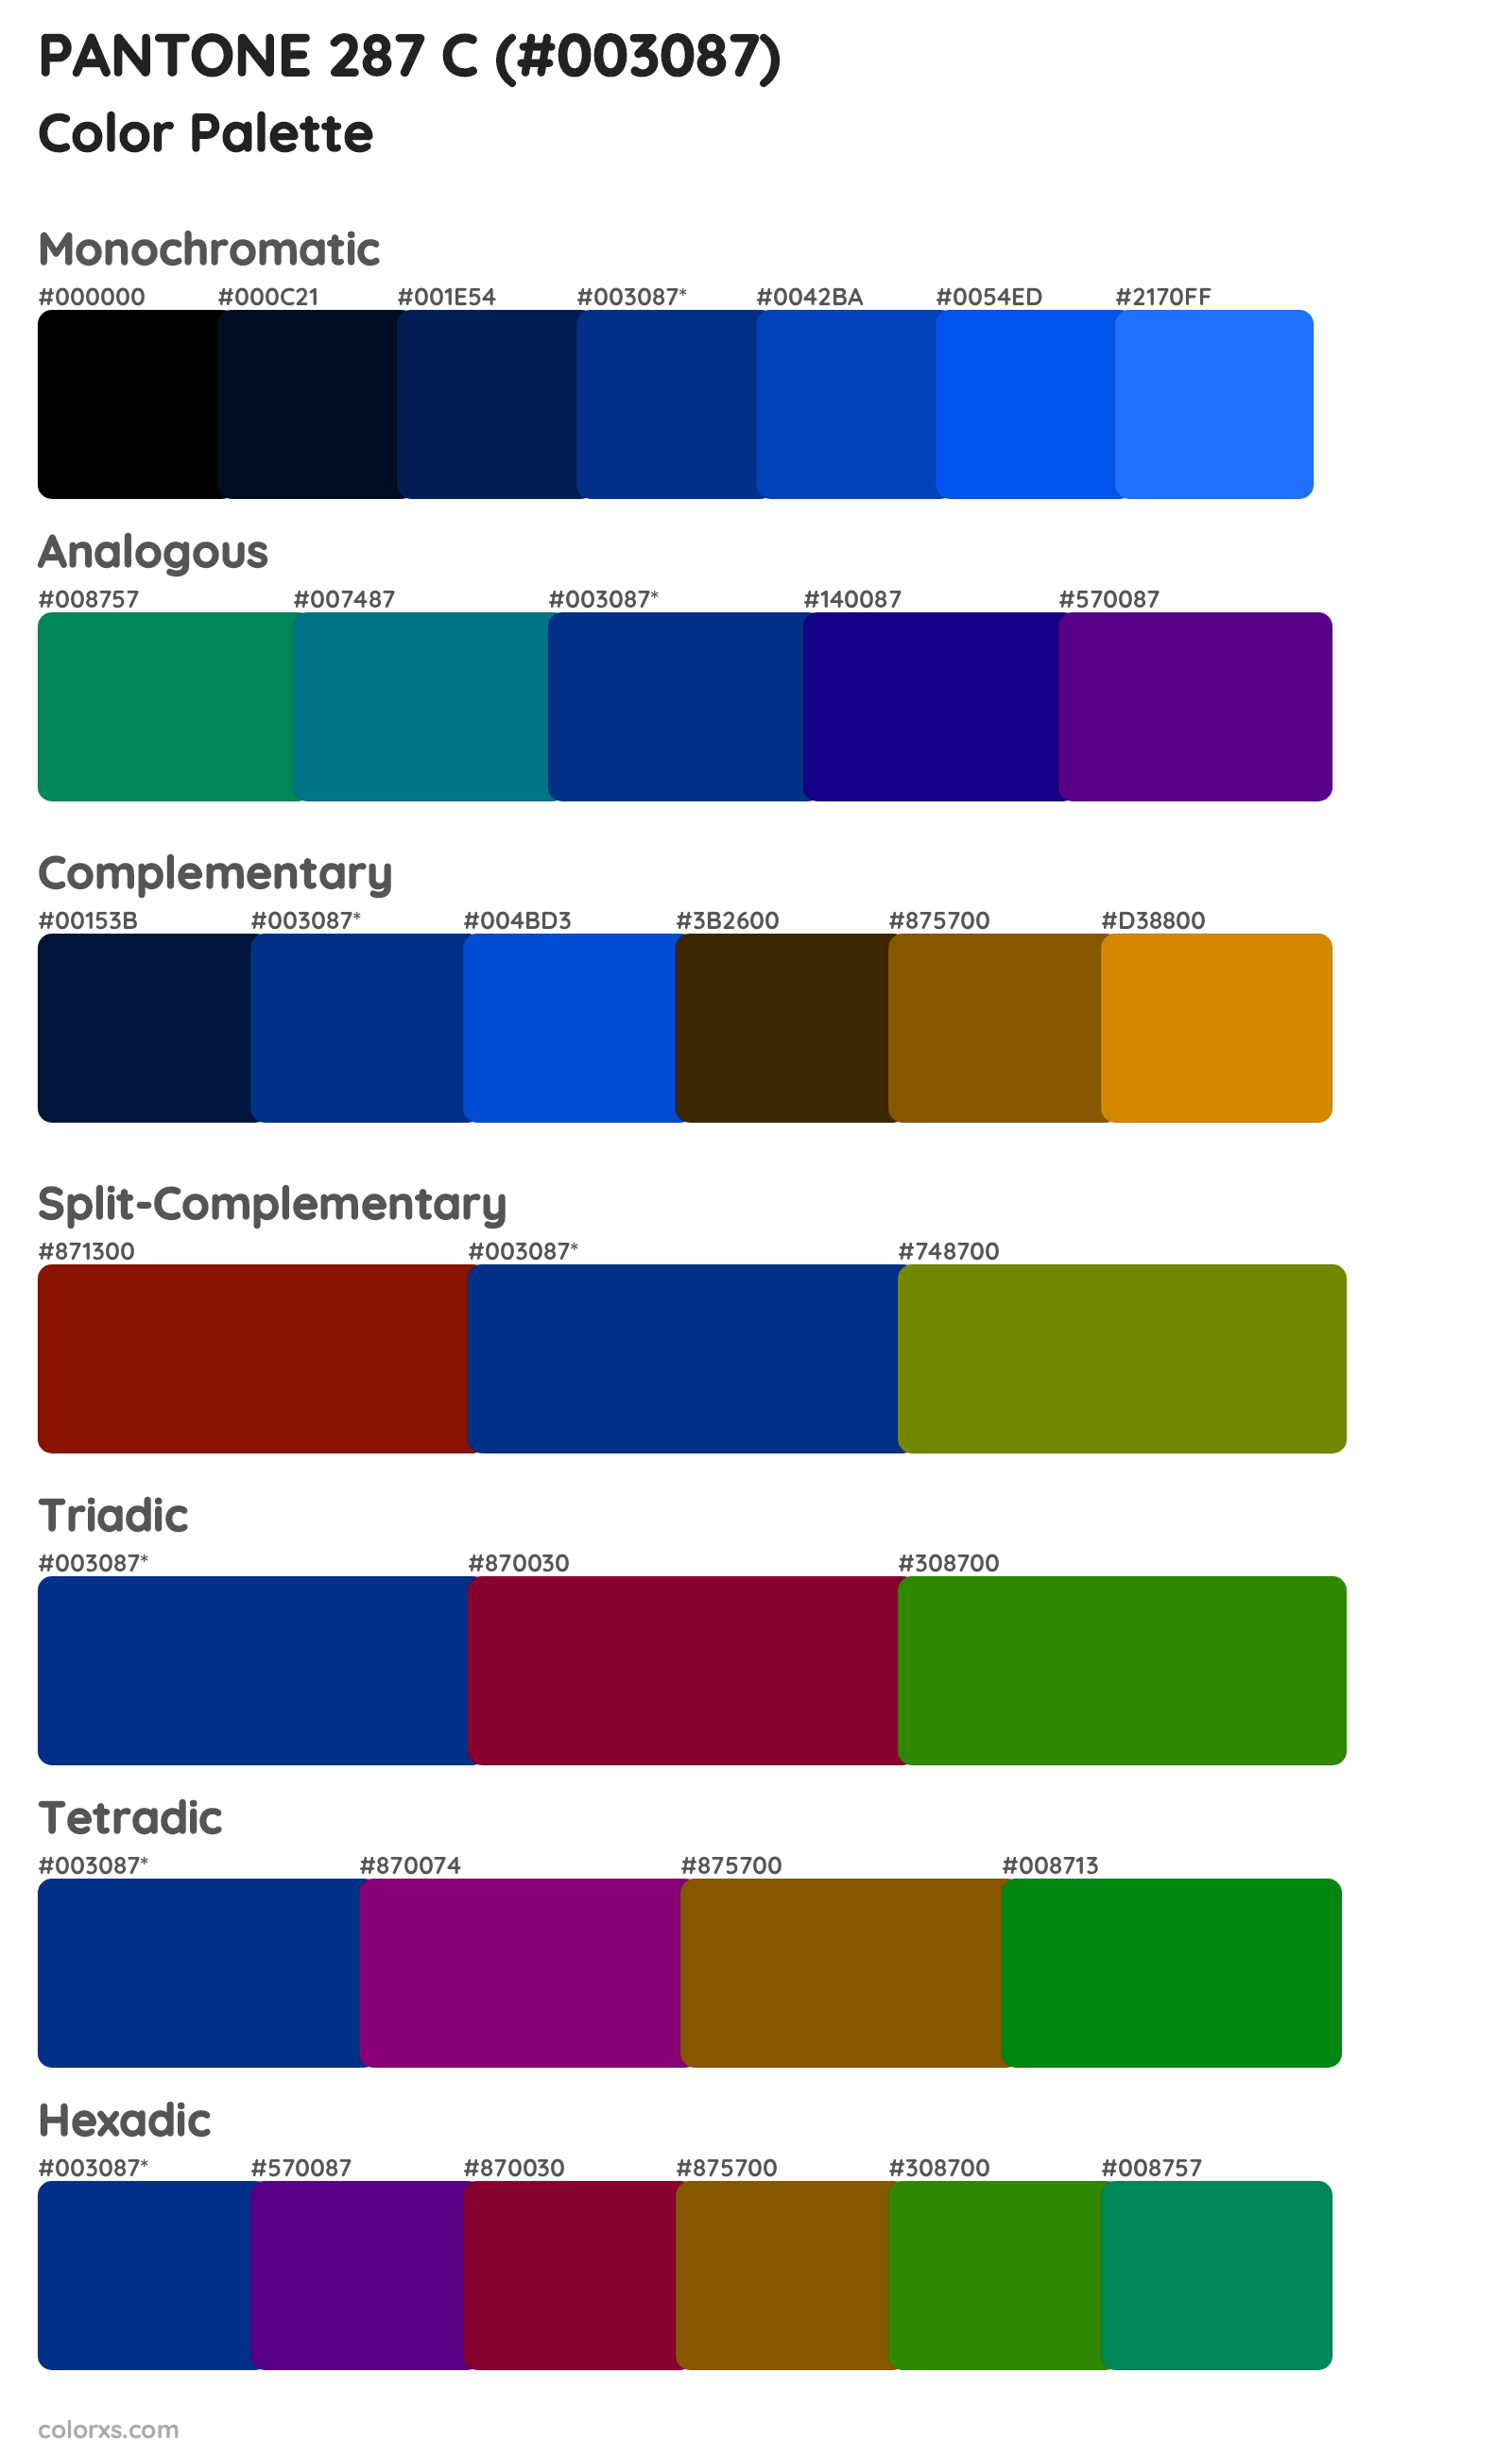 PANTONE 287 C Color Scheme Palettes